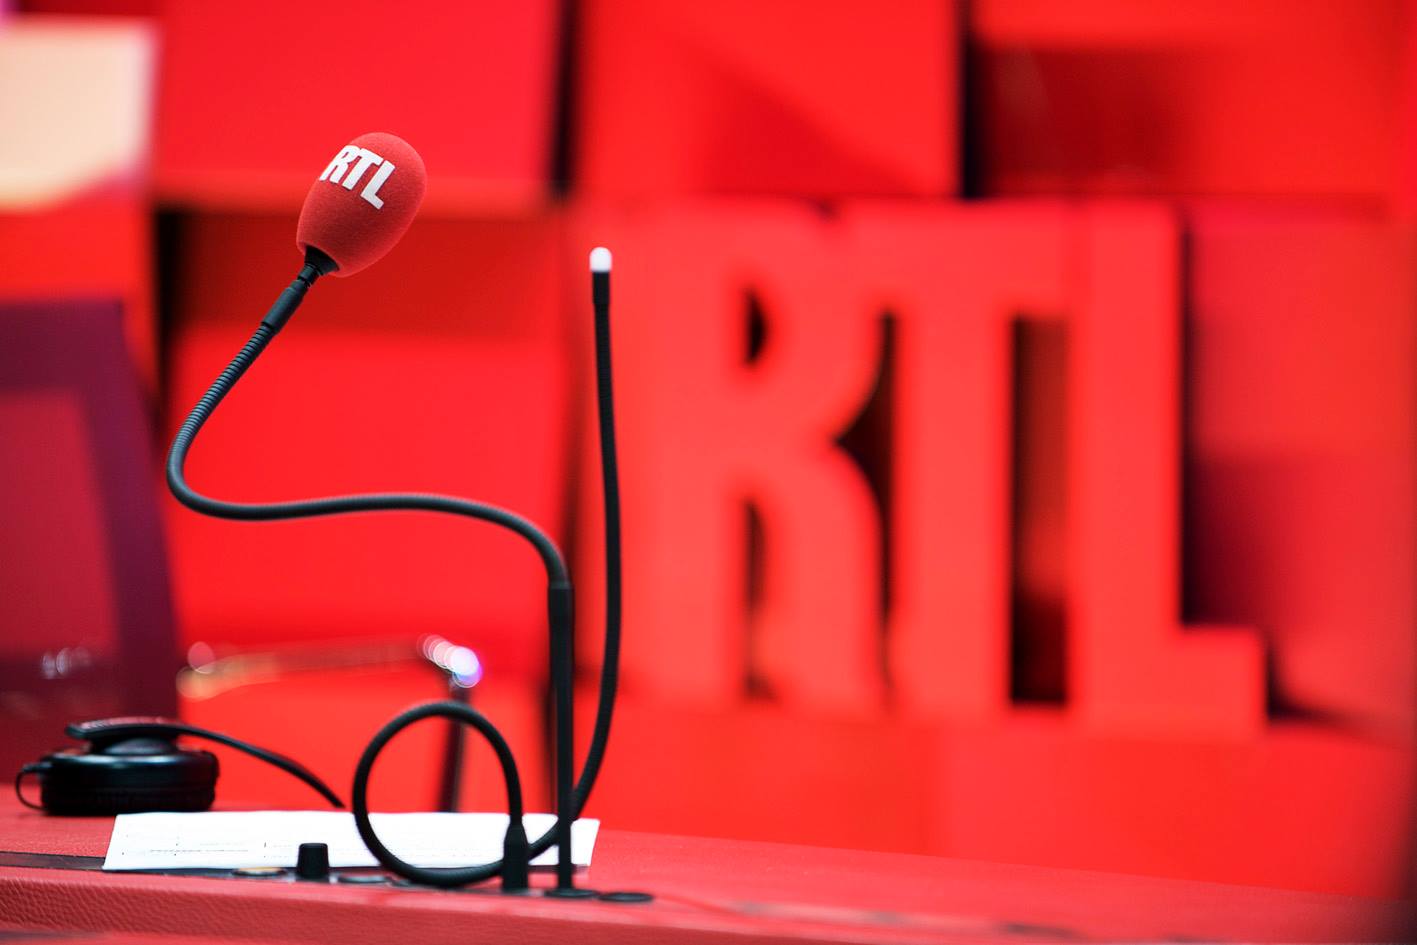 RTL se féminise jusqu'au 11 mars